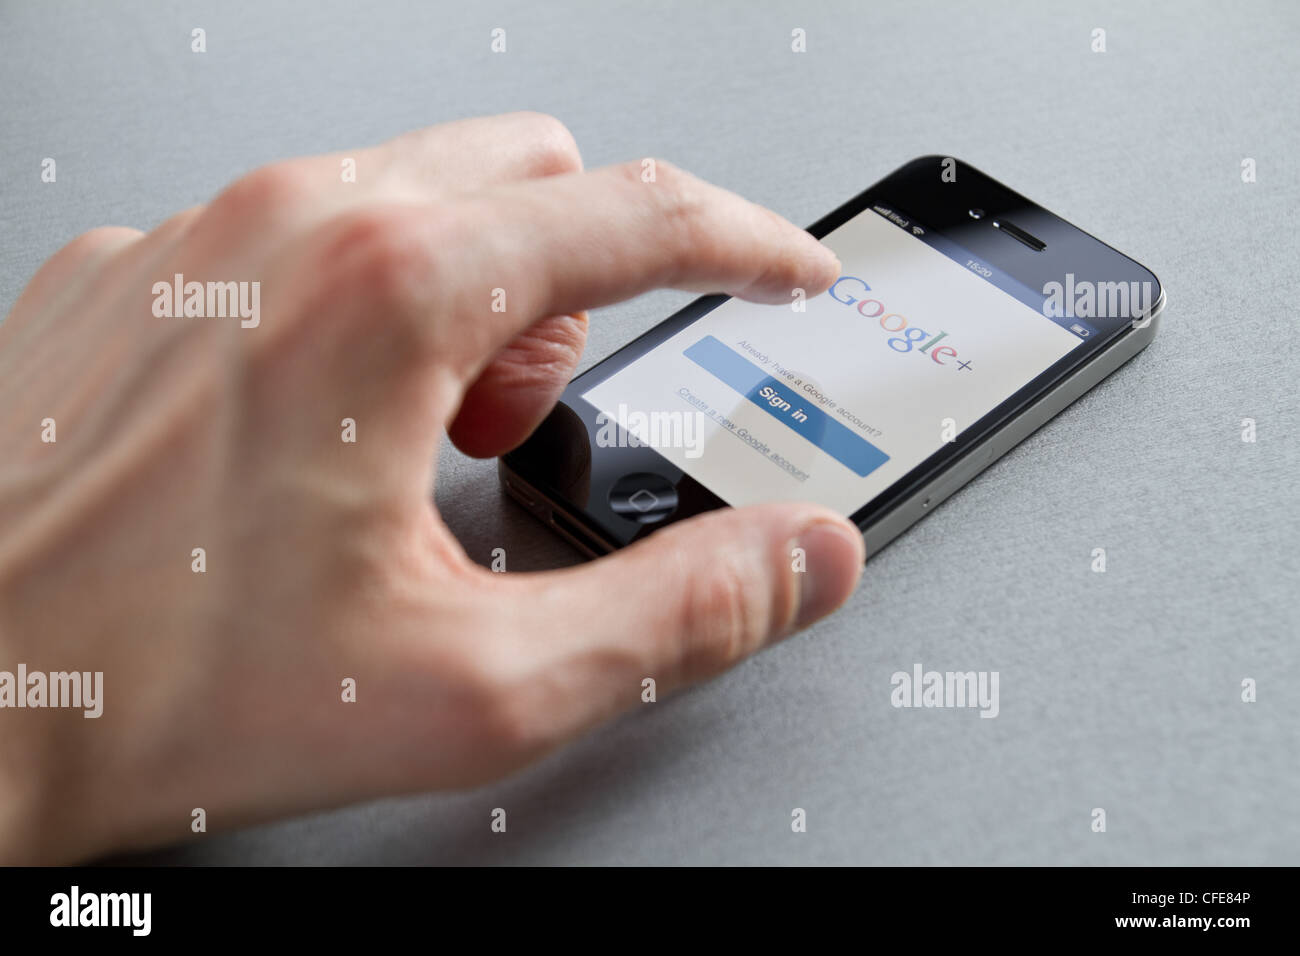 Hand des Mannes Apple iPhone mit Google + Seite auf dem Bildschirm zu berühren. Google + ist ein soziales Netzwerk von Google inc erstellt. Stockfoto